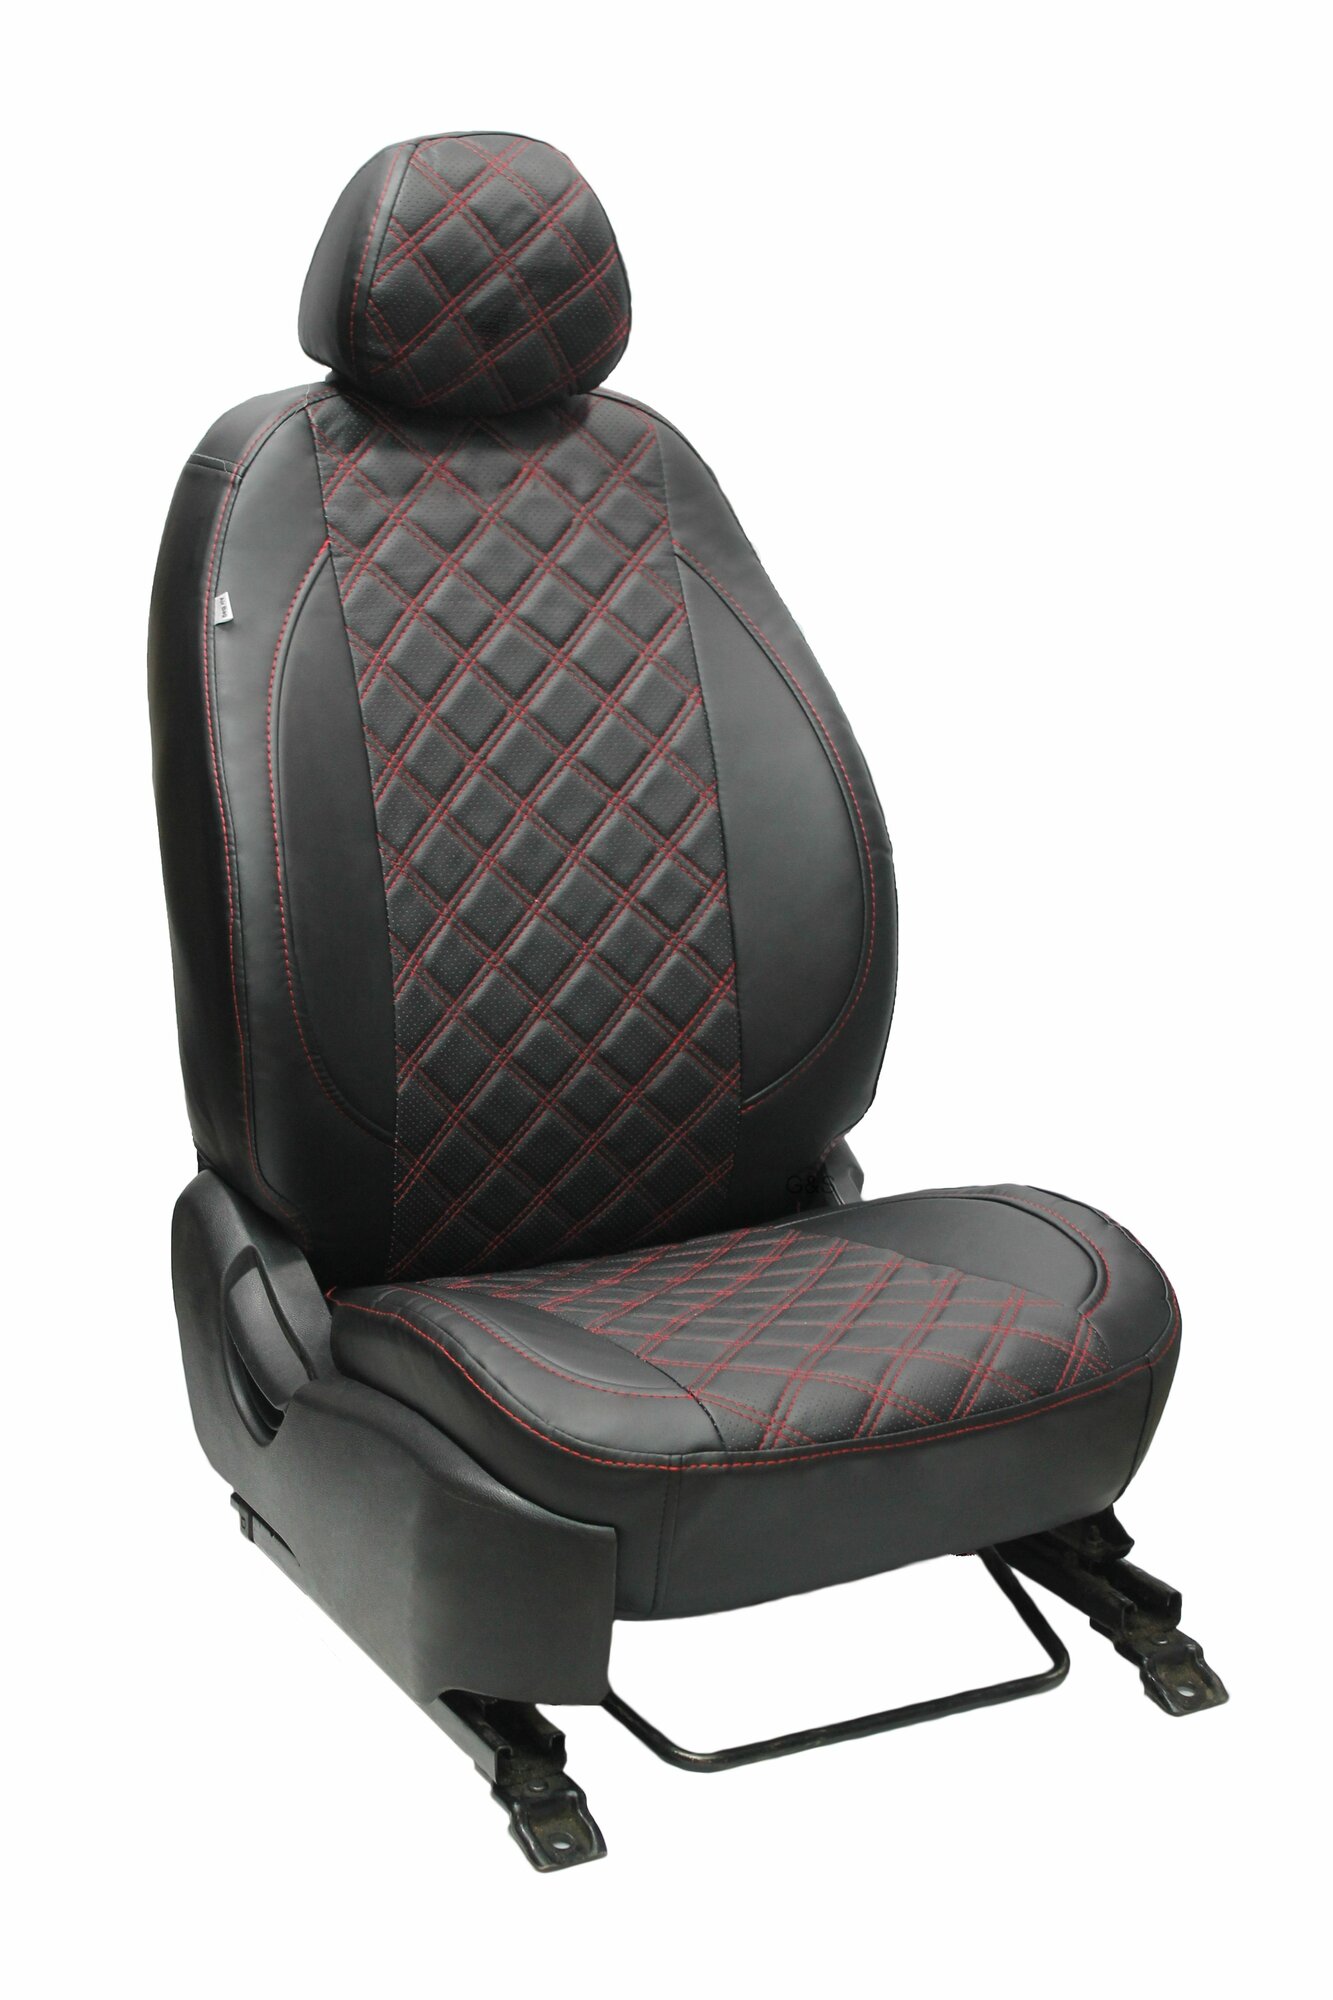 Чехлы для автомобильных сидений комплект Premium на MAZDA 3 (2003-2009; 2010-2012) седан хэтчбек авточехлы модельные экокожа черный ромб красная нить (Мазда)